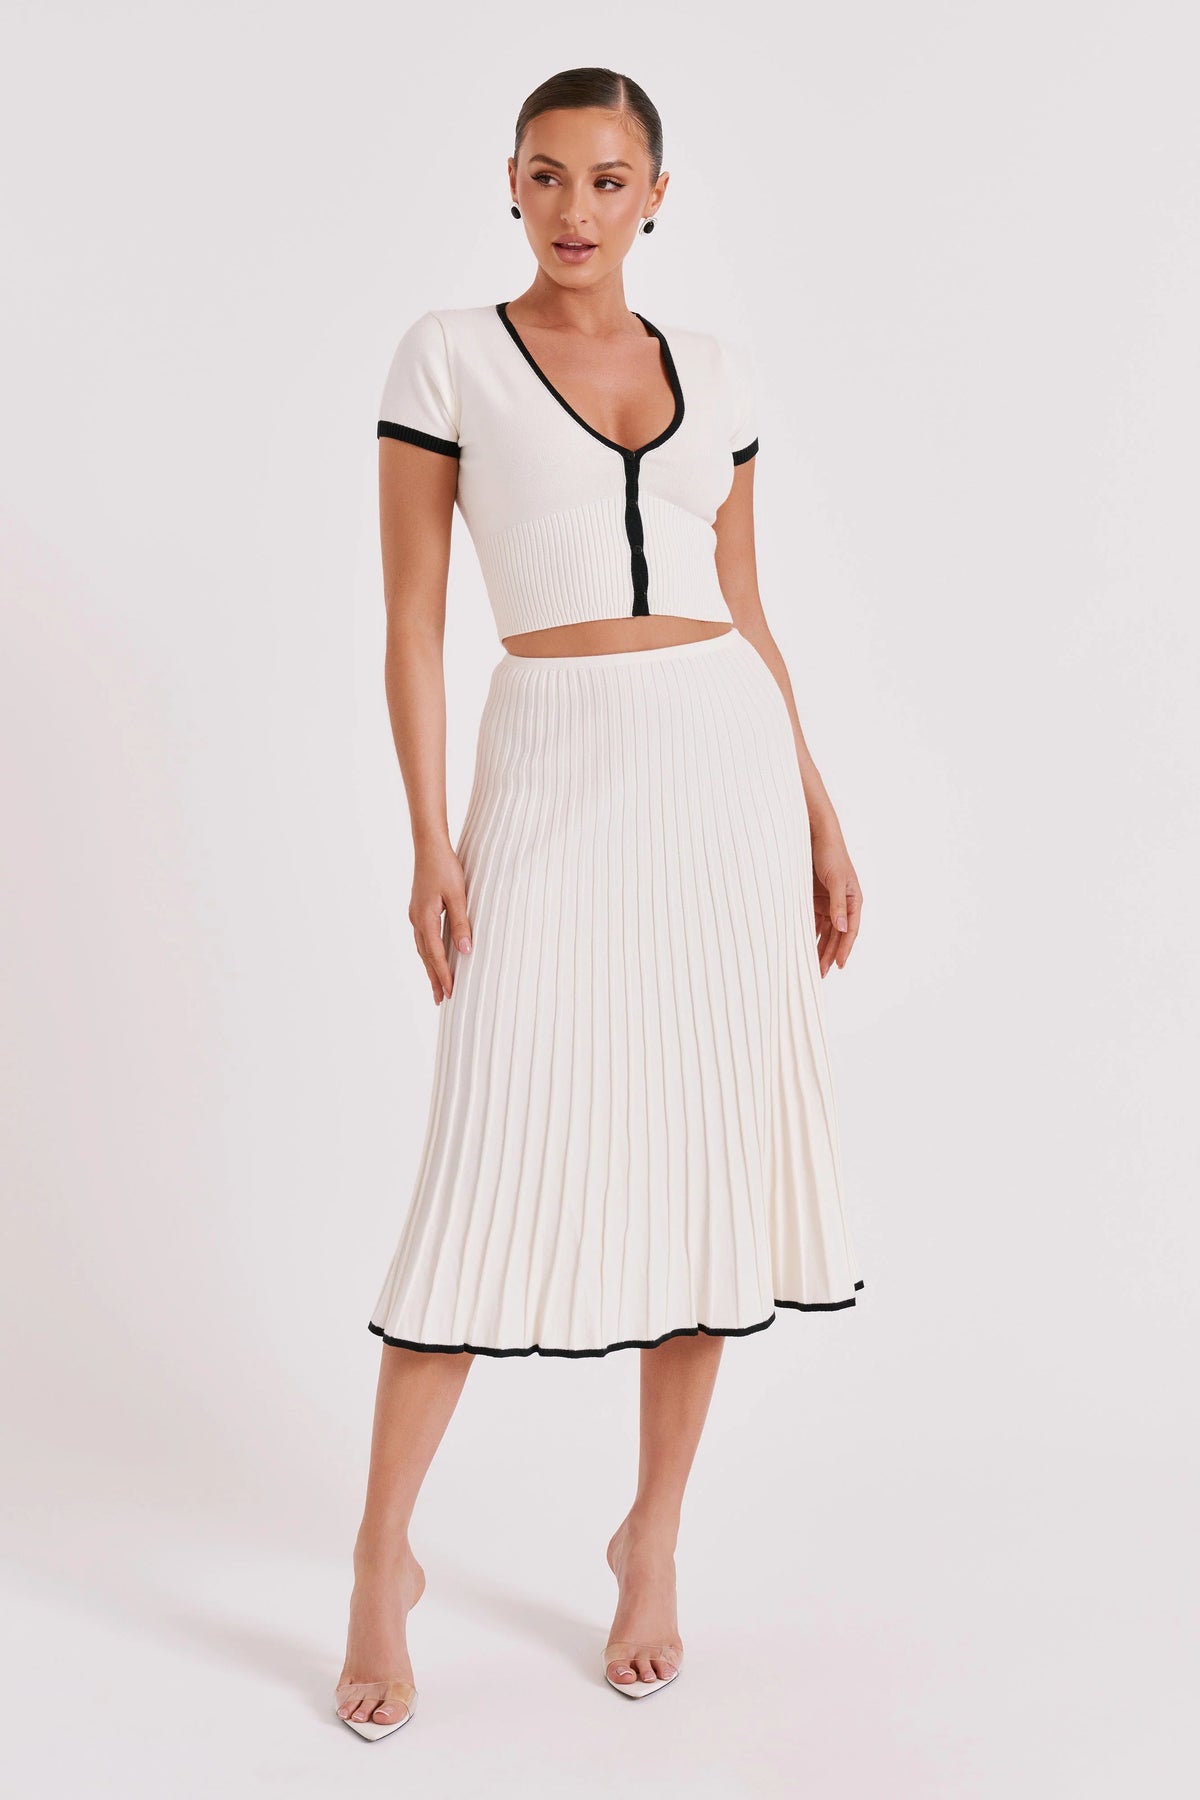 Nerja Set - Long Knit Skirt